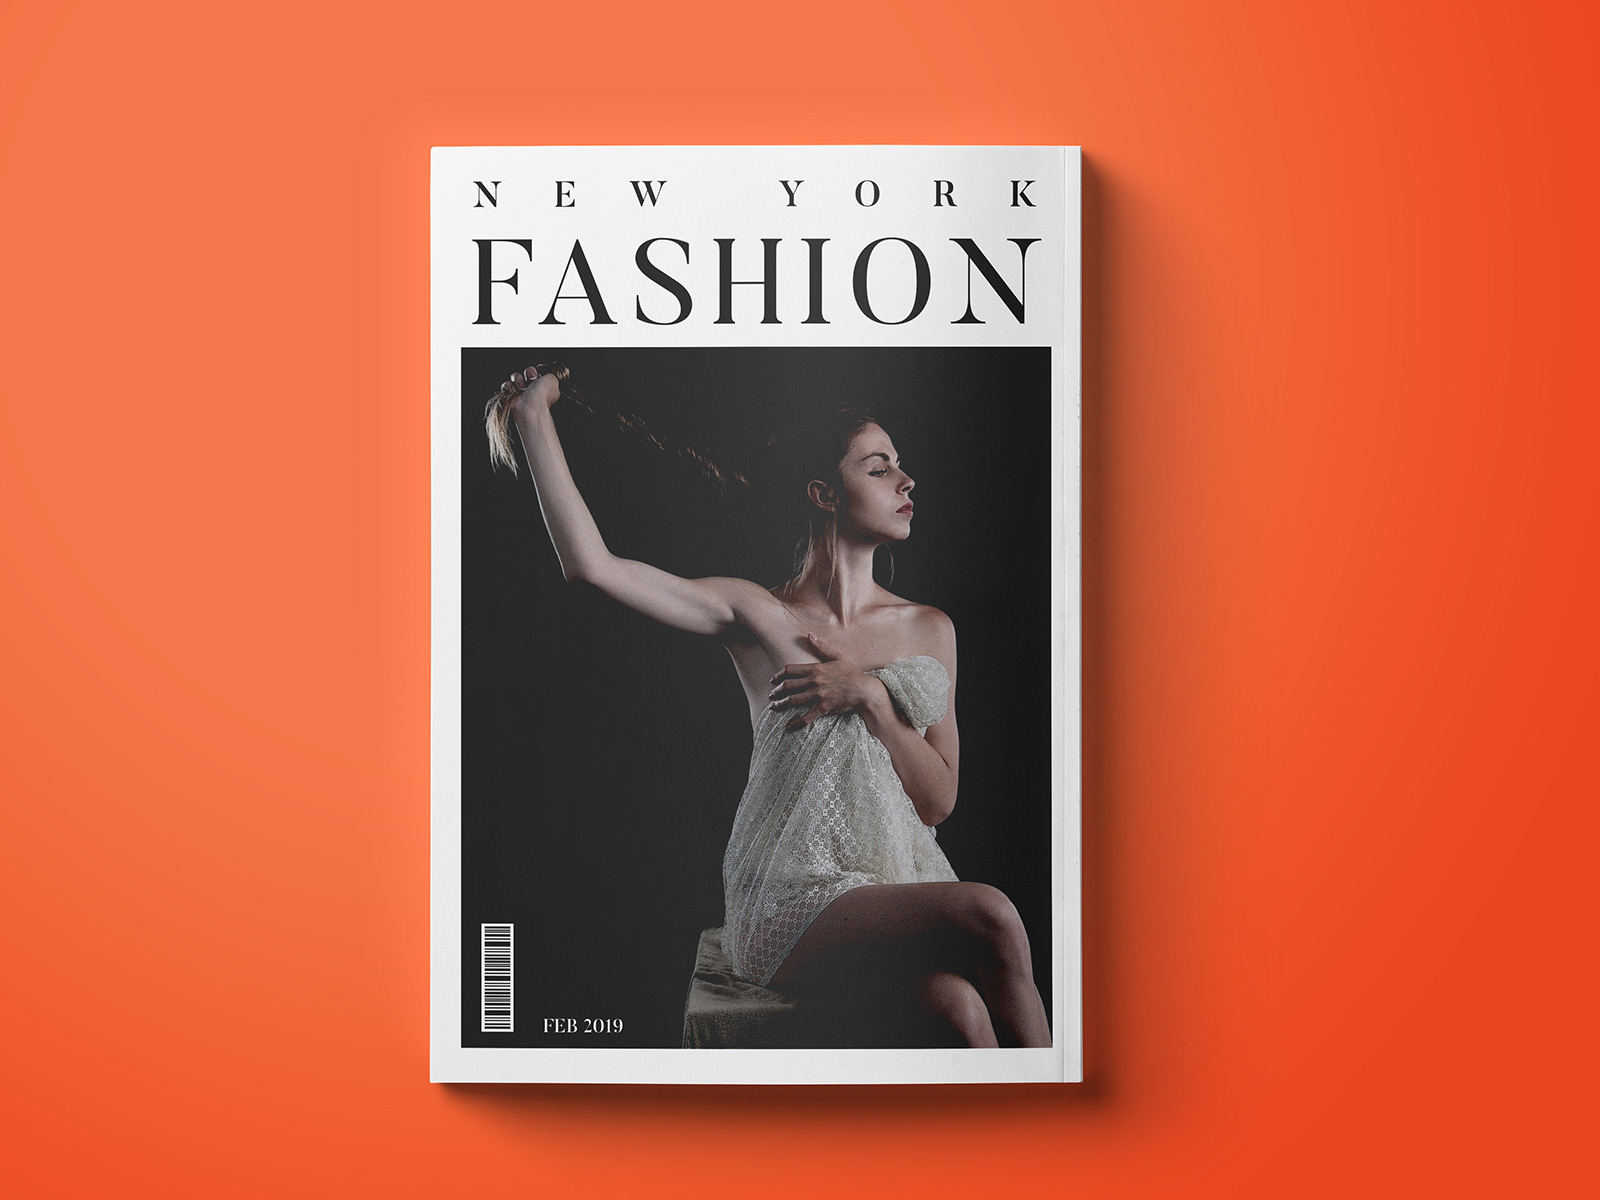  Fashion Magazine Cover Design